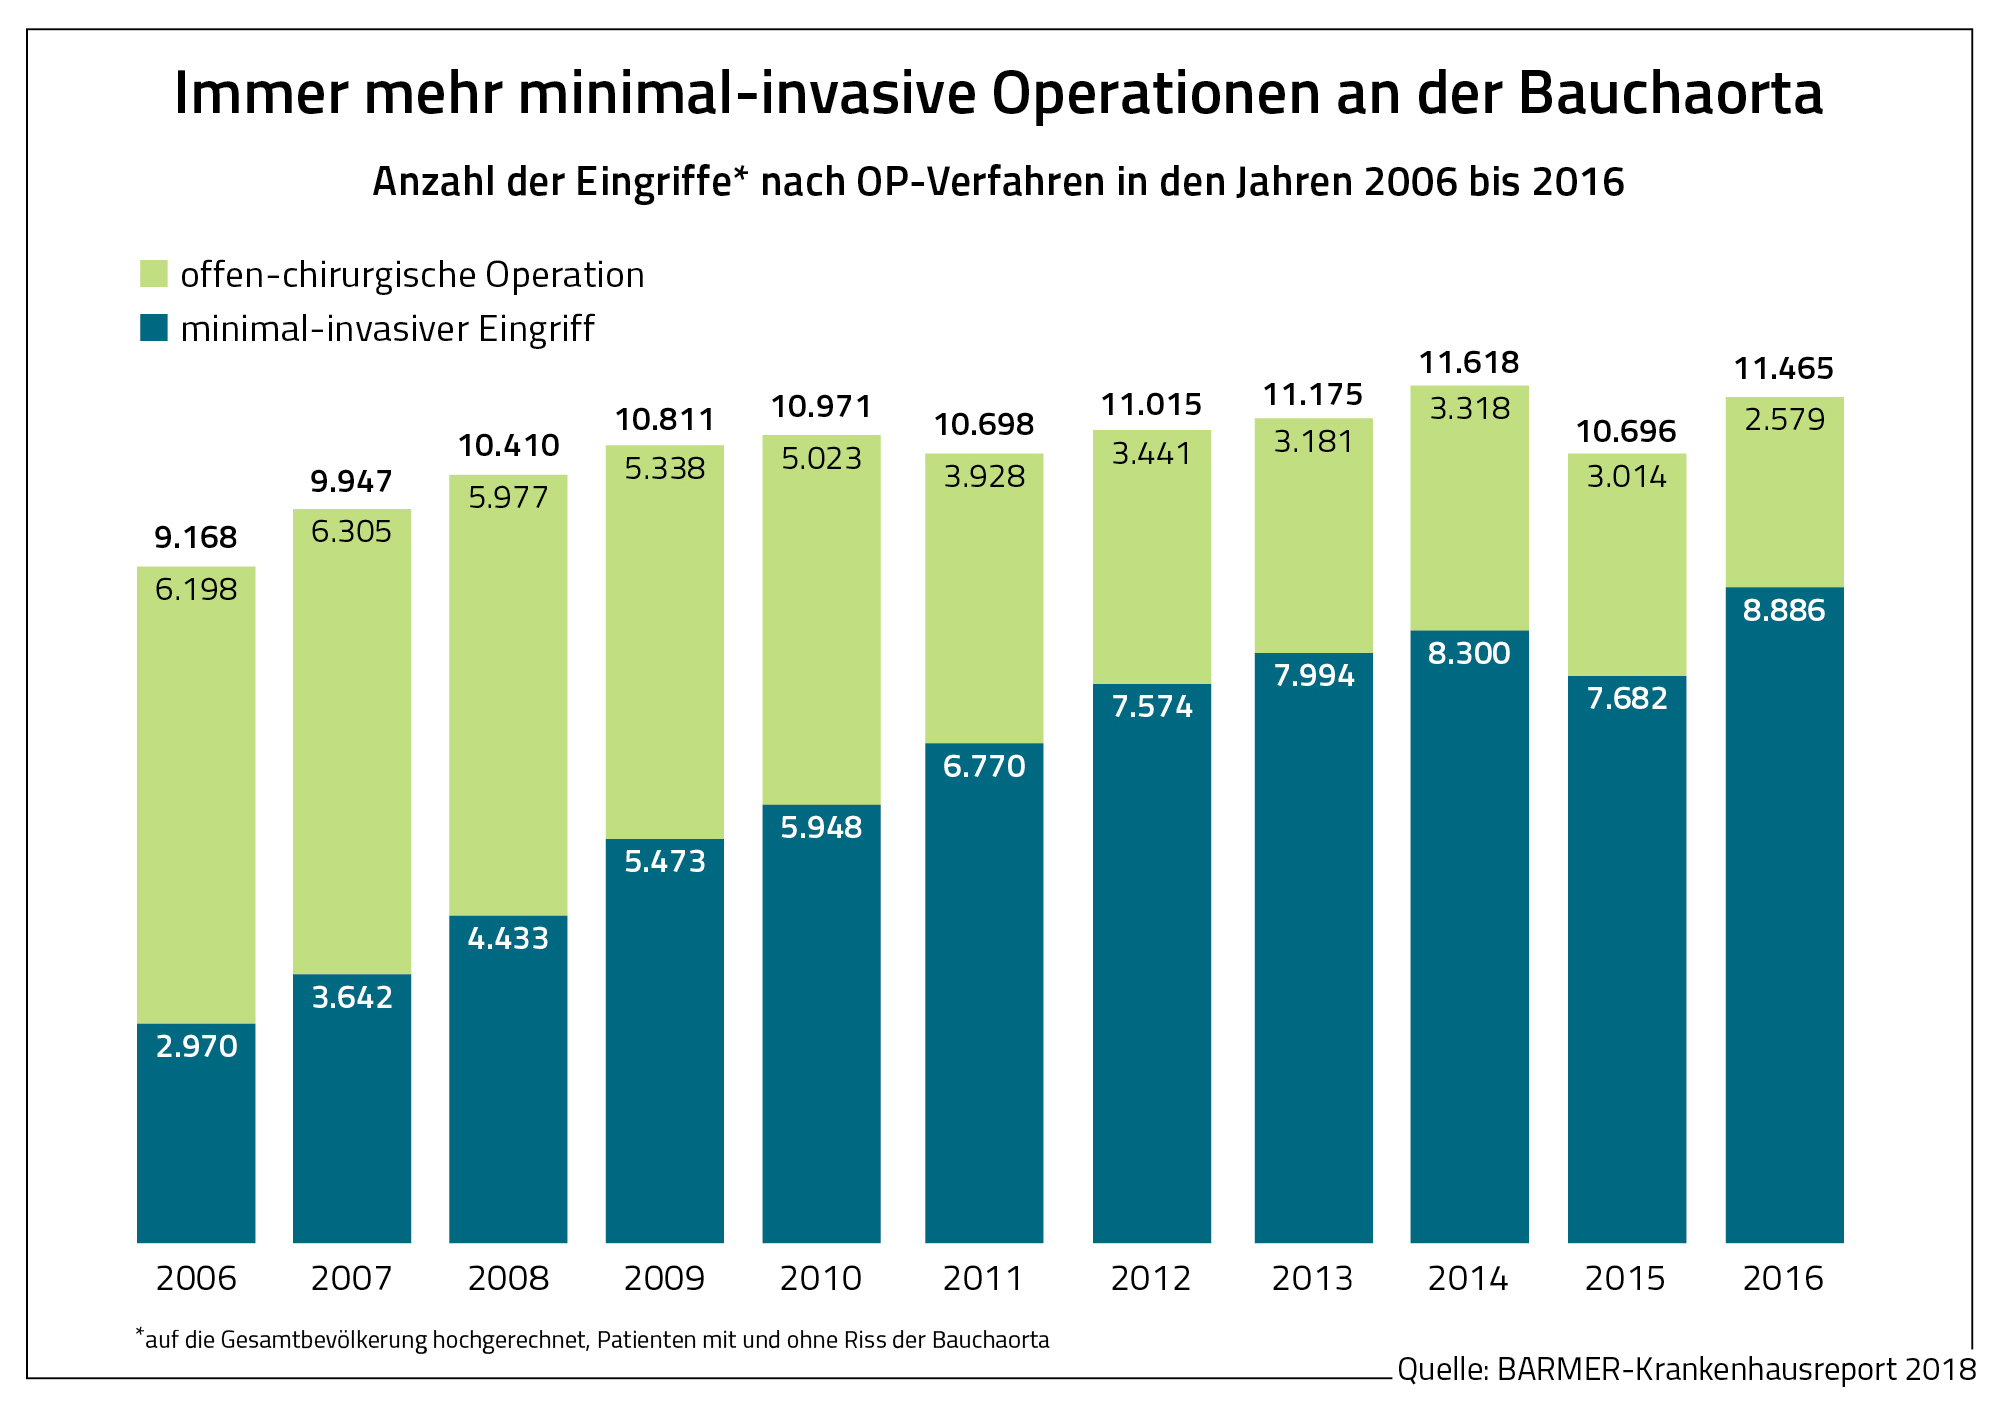 Die Grafik zeigt die Anzahl der Eingriffe nach OP-Verfahren in den Jahren 2006 bis 2016